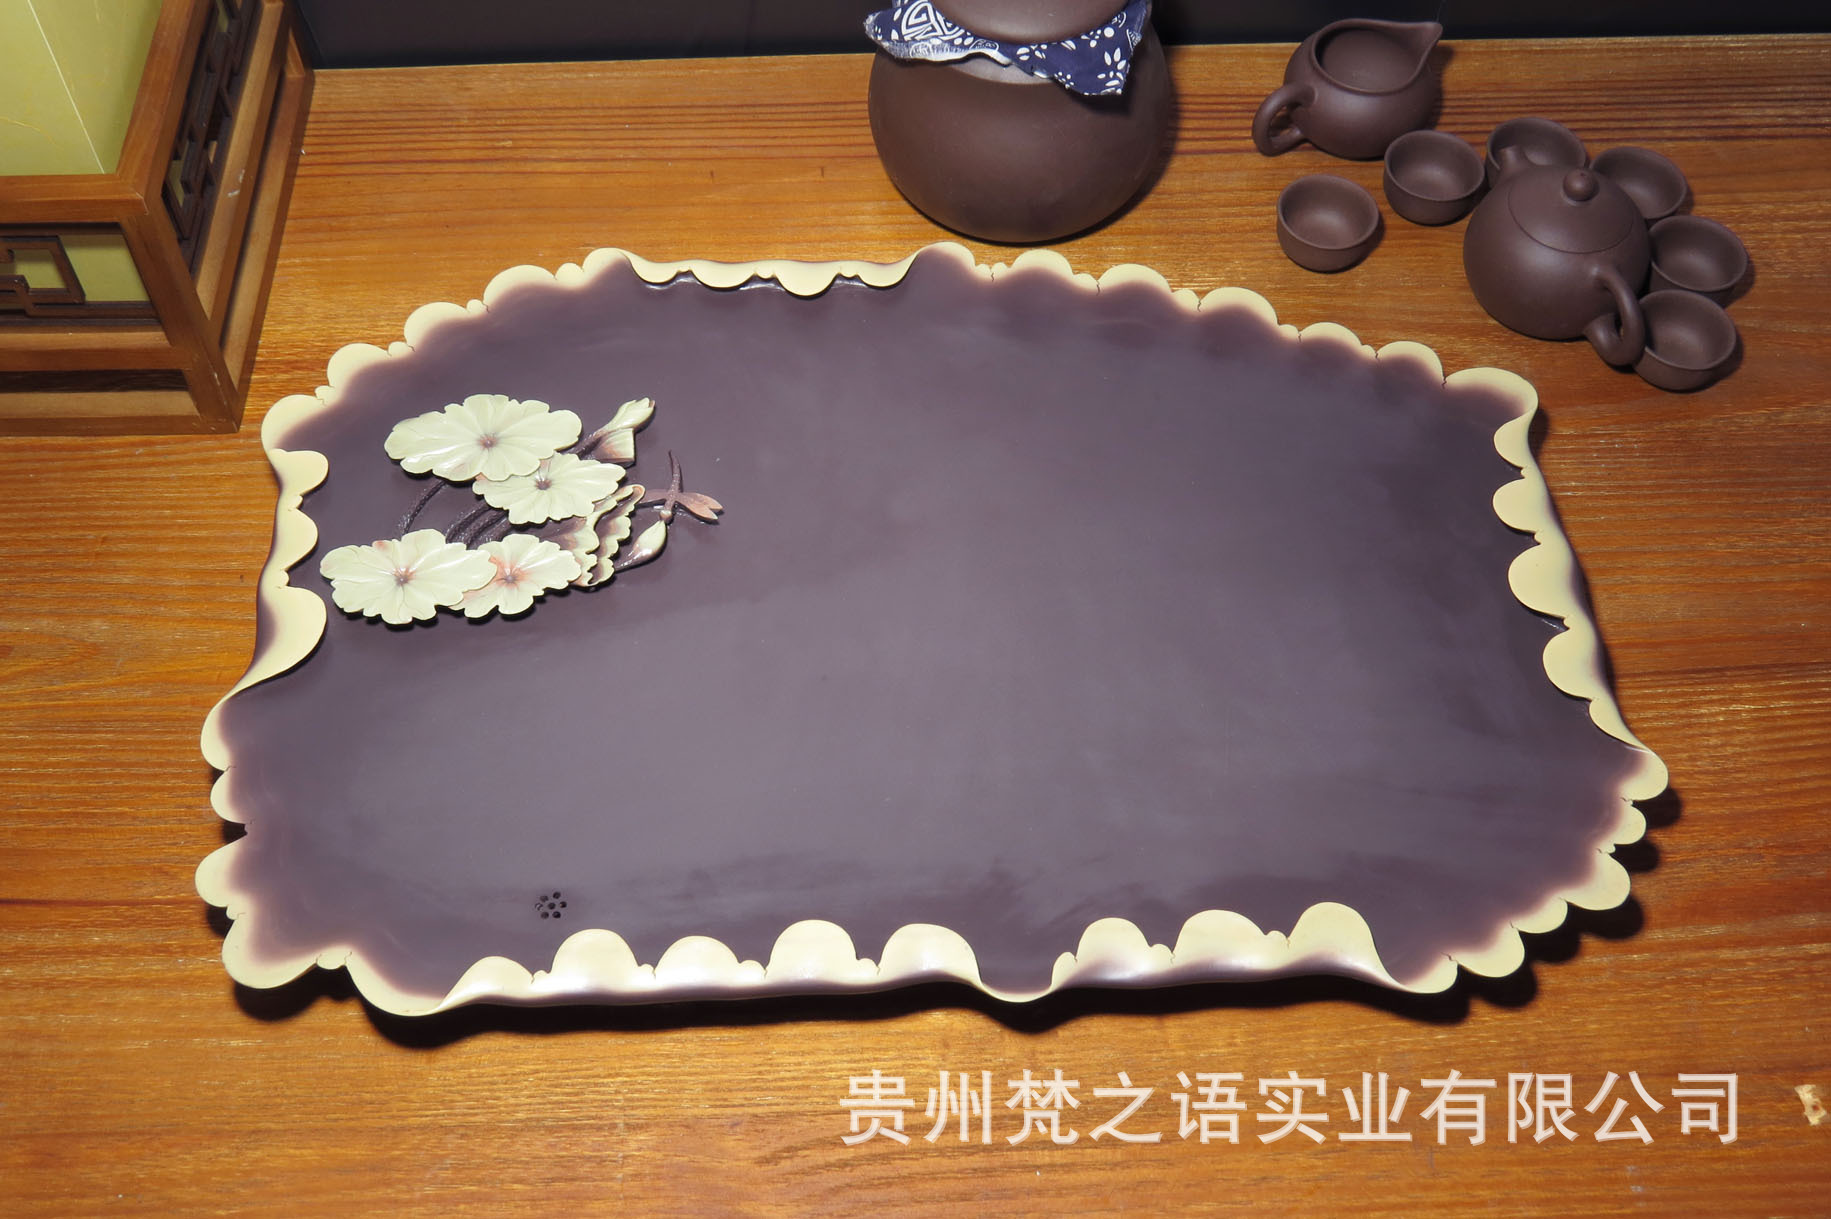 紫袍玉带石 茶盘 创意茶盘【梵田作品:cp-12377】